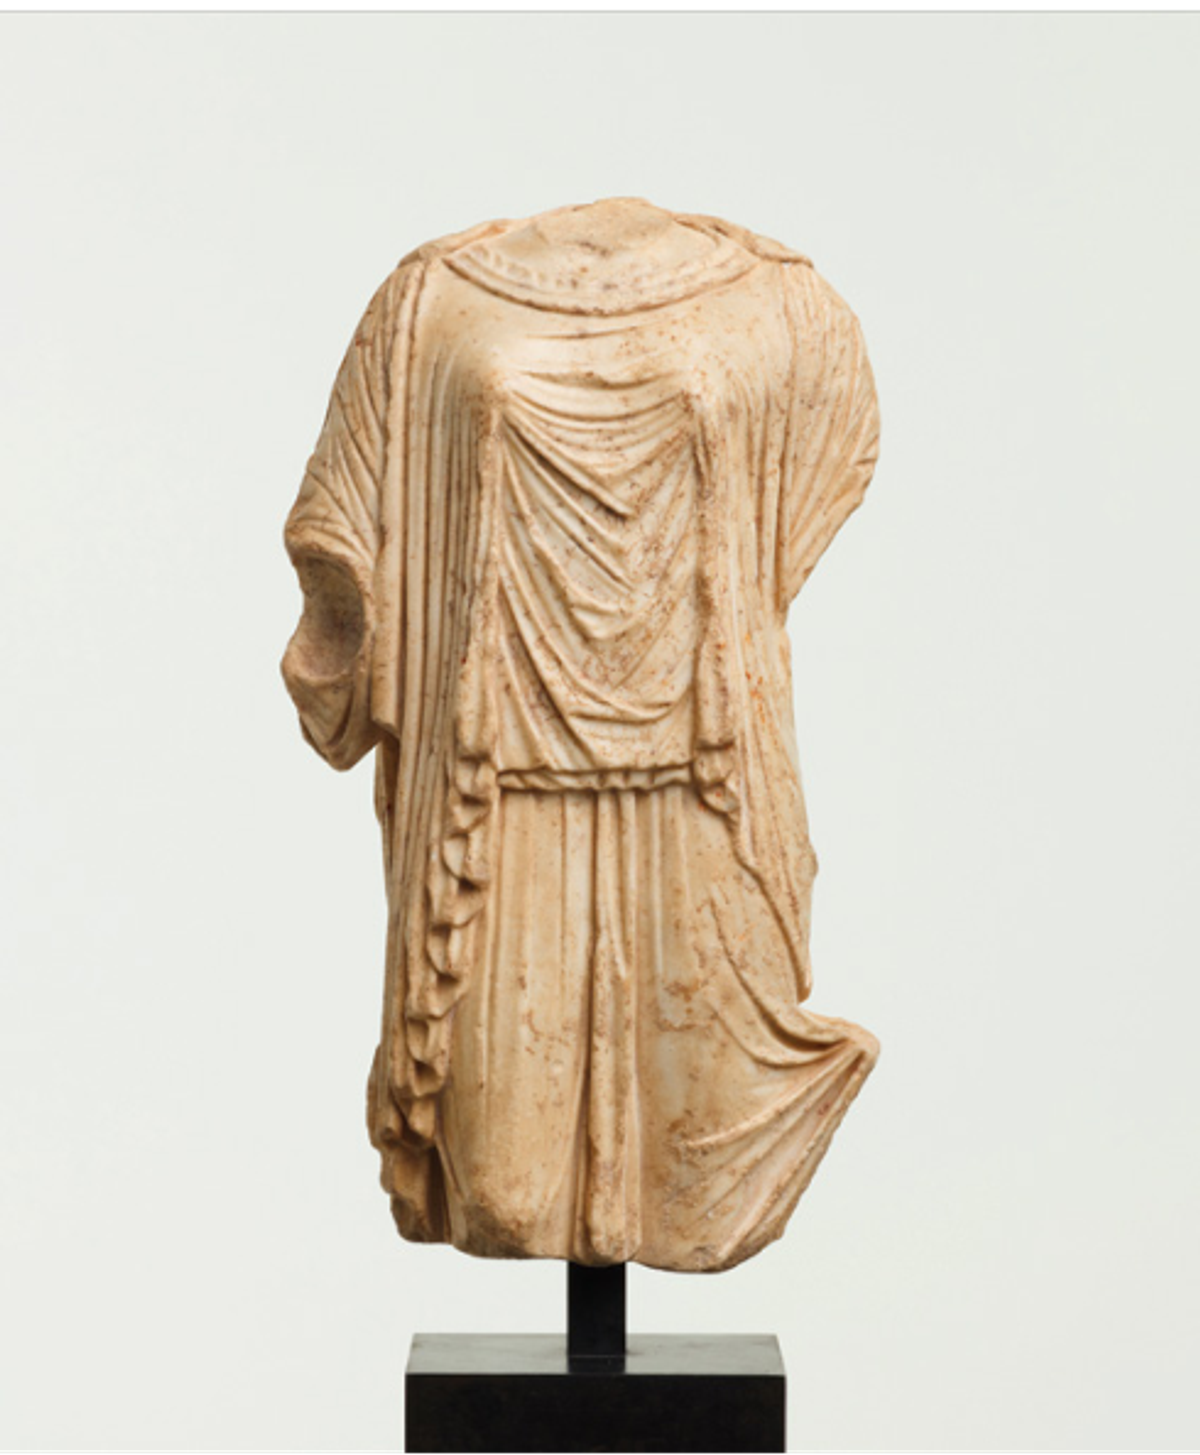 Kore romaine, Ier siècle avant notre ère-Ier siècle après notre ère, marbre. Courtesy de la galerie Chenel
